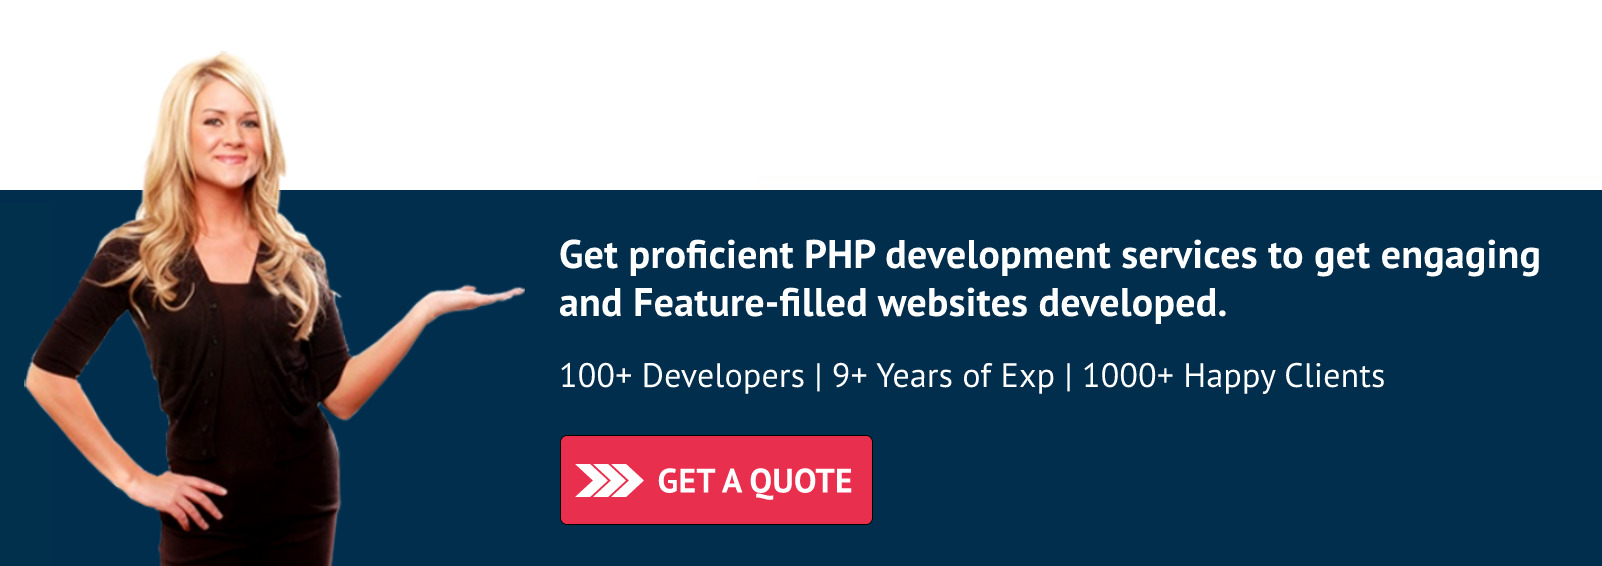 proficient-PHP-development-services-CTA